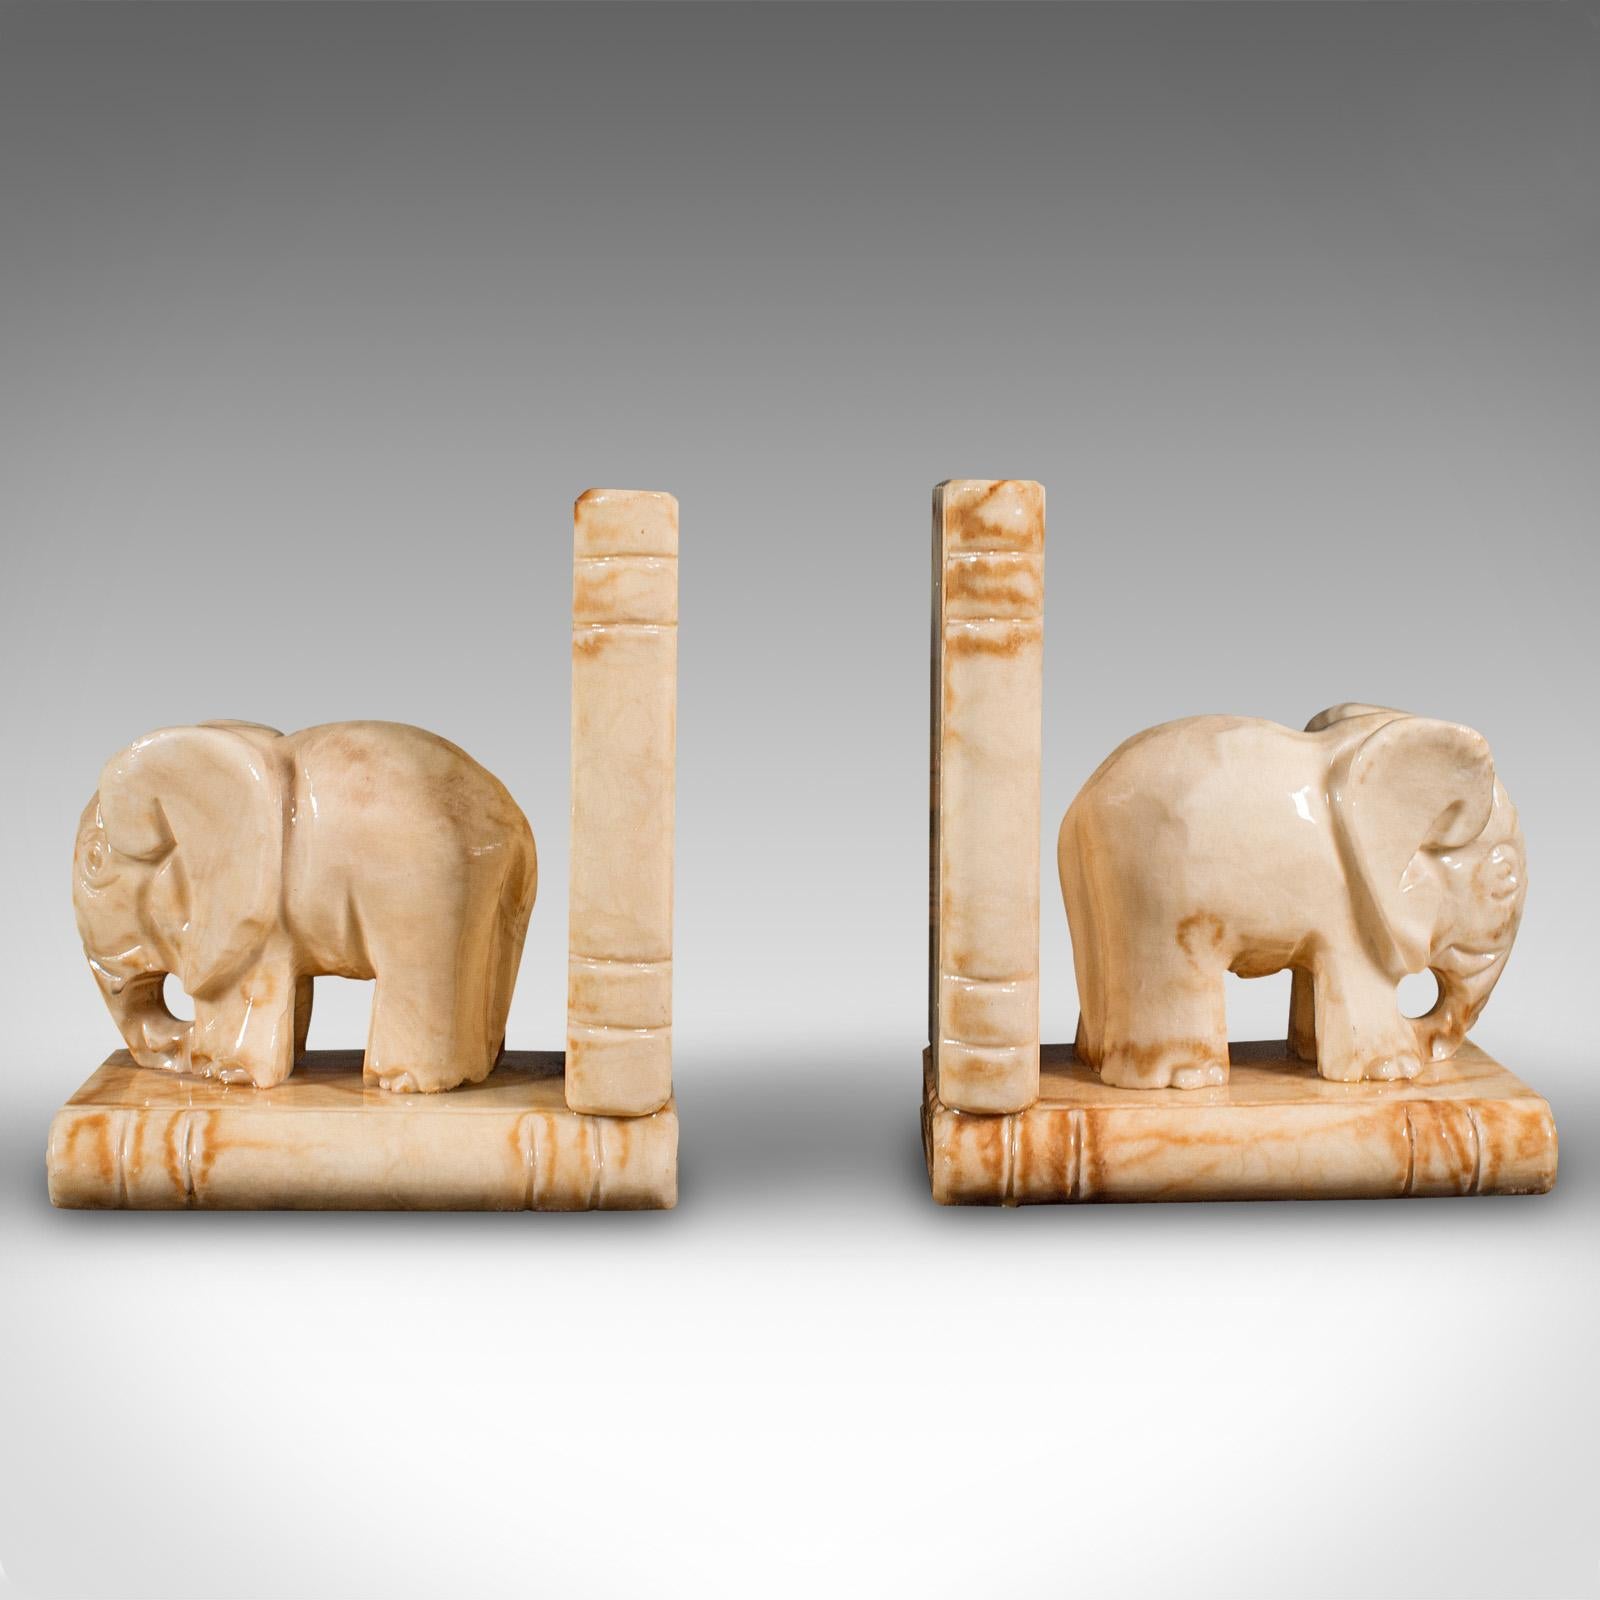 Il s'agit d'une paire de serre-livres anciens en forme d'éléphant. Porte-livre ou roman décoratif africain en onyx de lait, datant de la fin de la période victorienne, vers 1900.

Un grand caractère et un grand attrait pour le lecteur